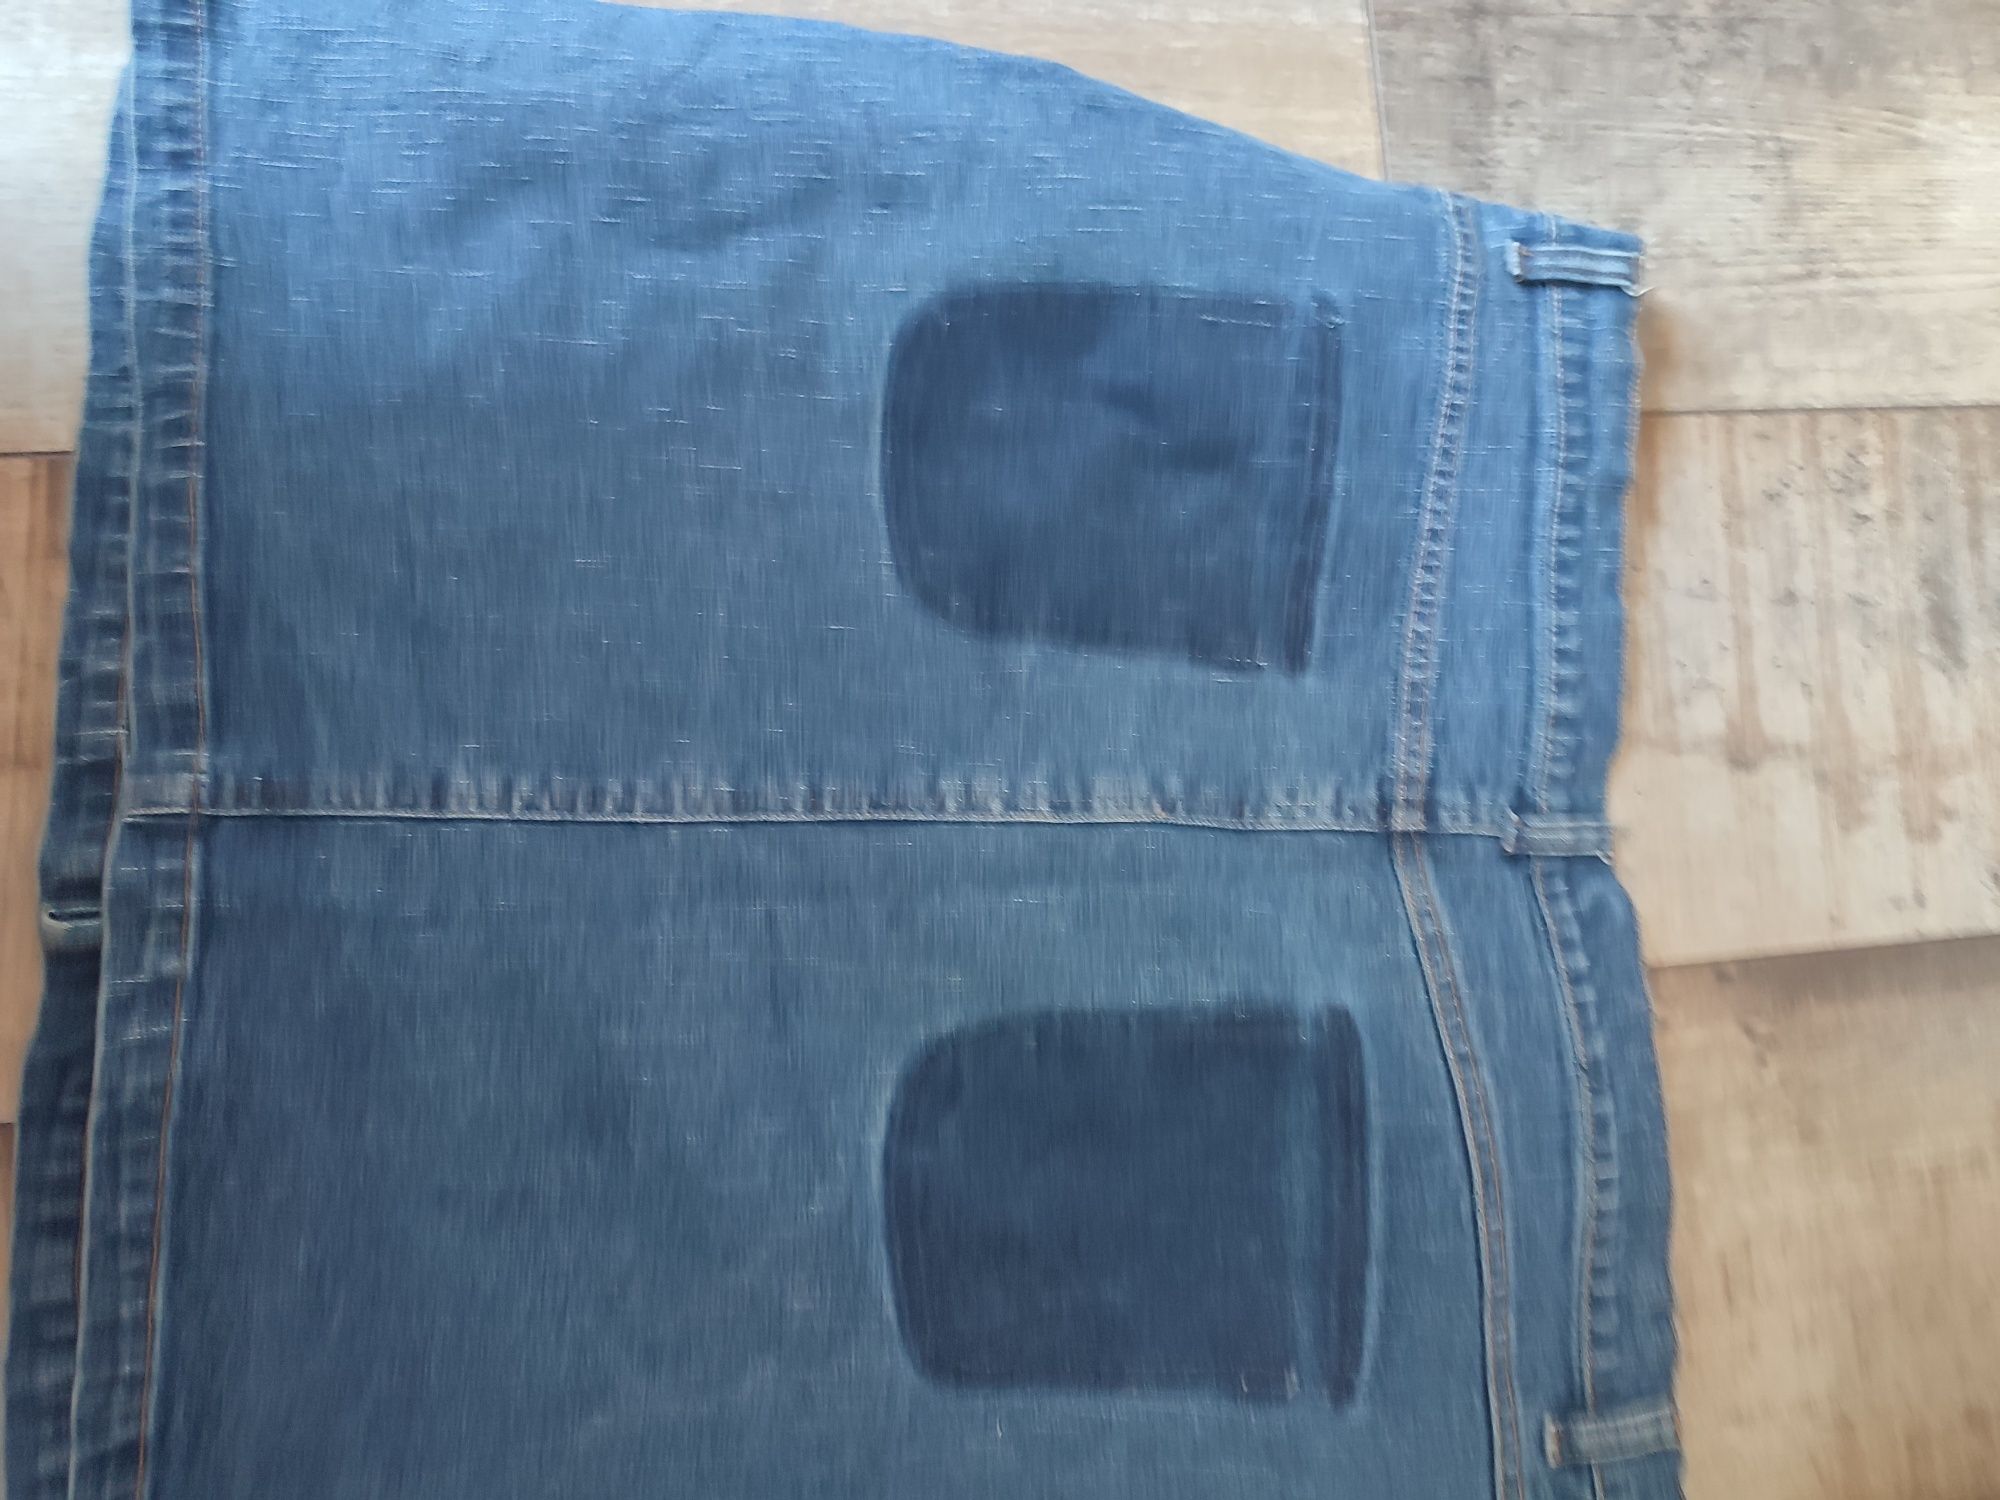 Spódniczka jeansowa mini